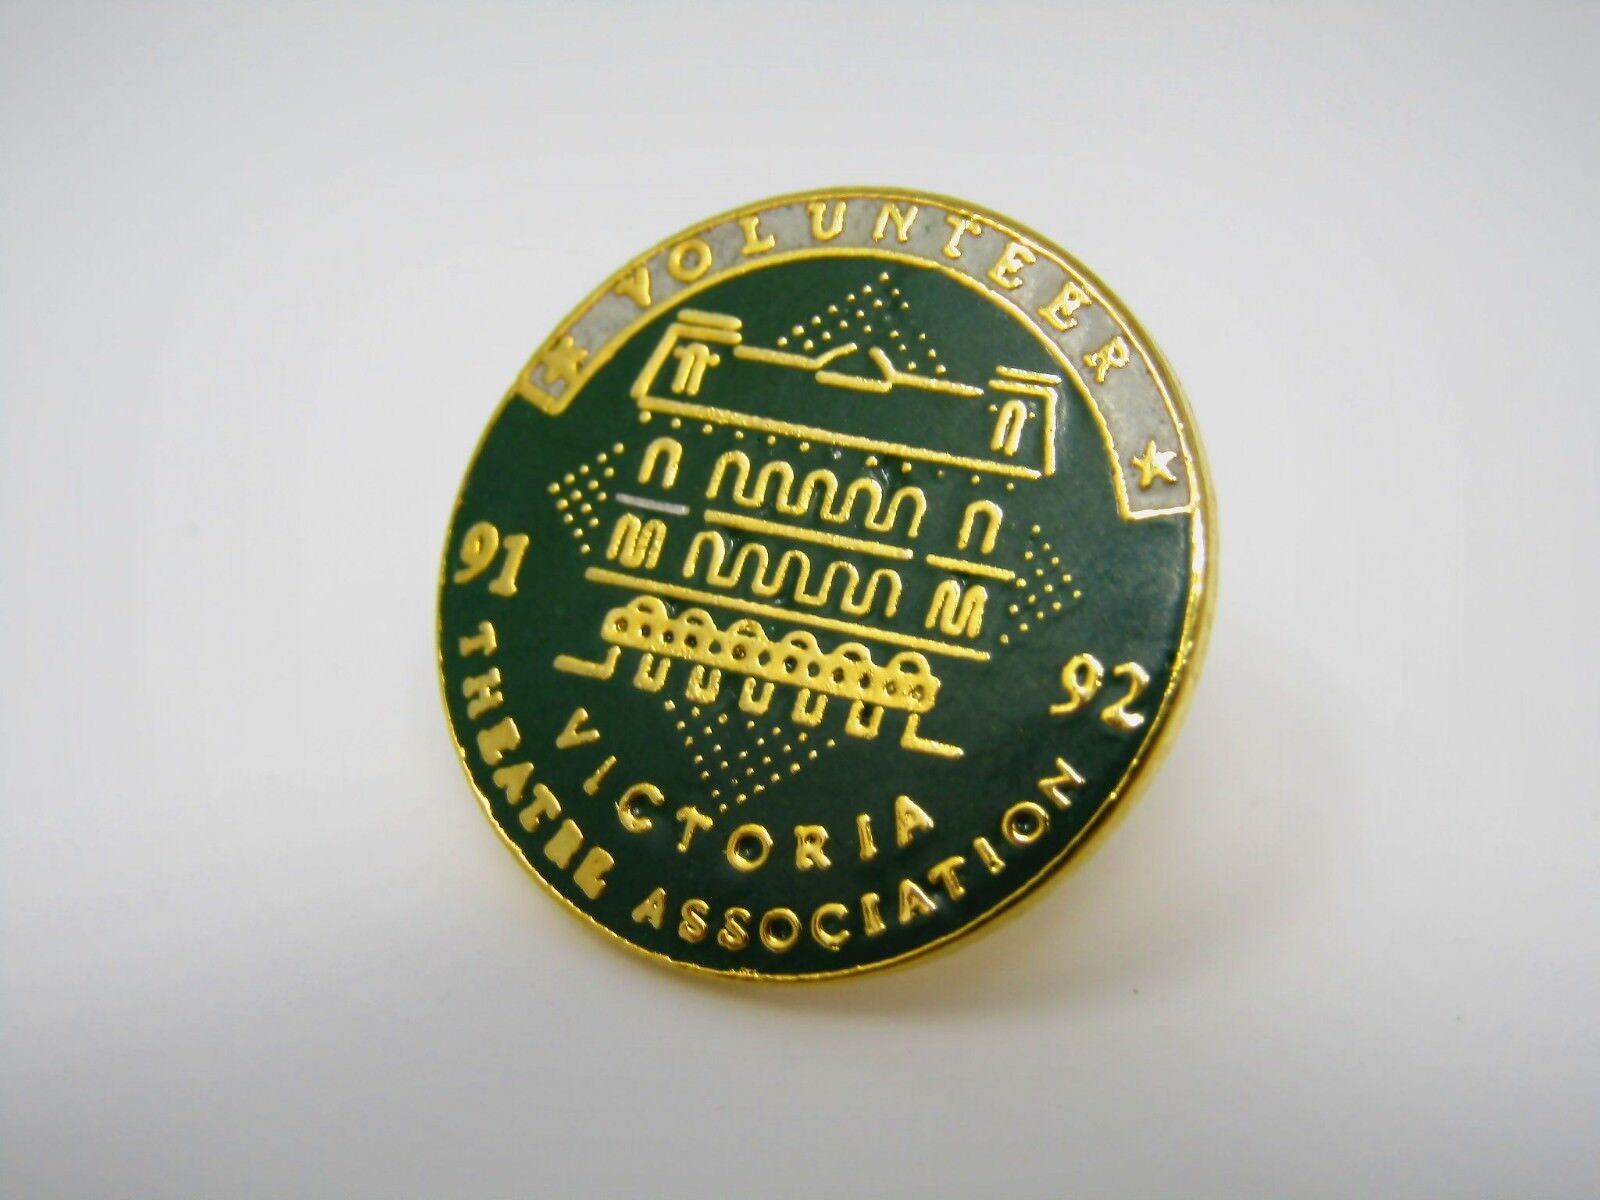 Vintage Collectible Pin: Victoria Theatre Association Volunteer 91 92